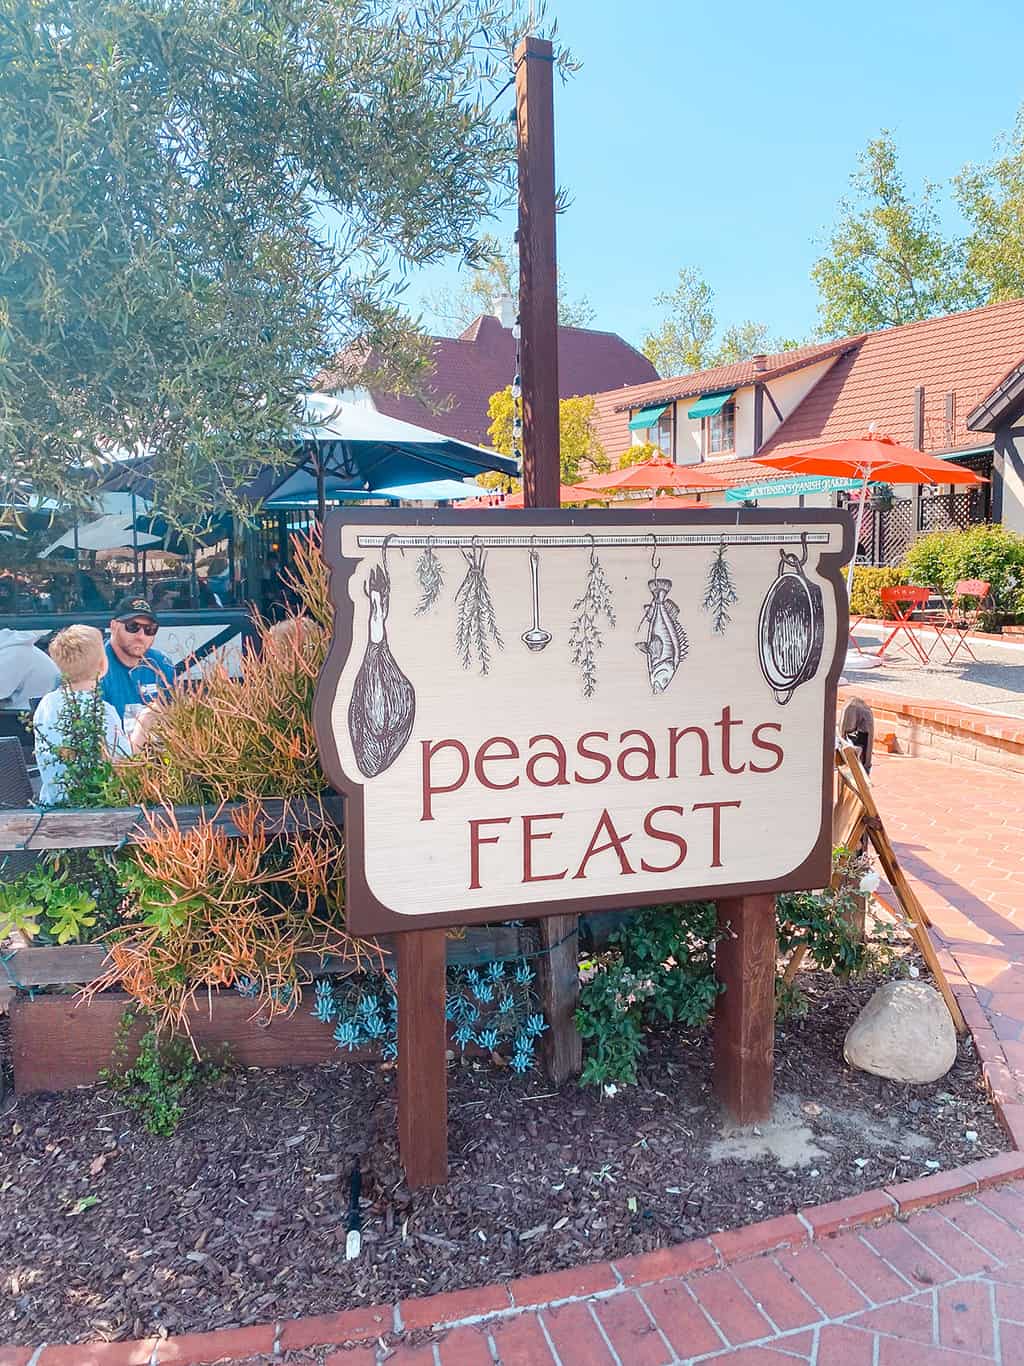 Peasants FEAST in Solvang California- credit Keryn Means of TwistTravelMag.com